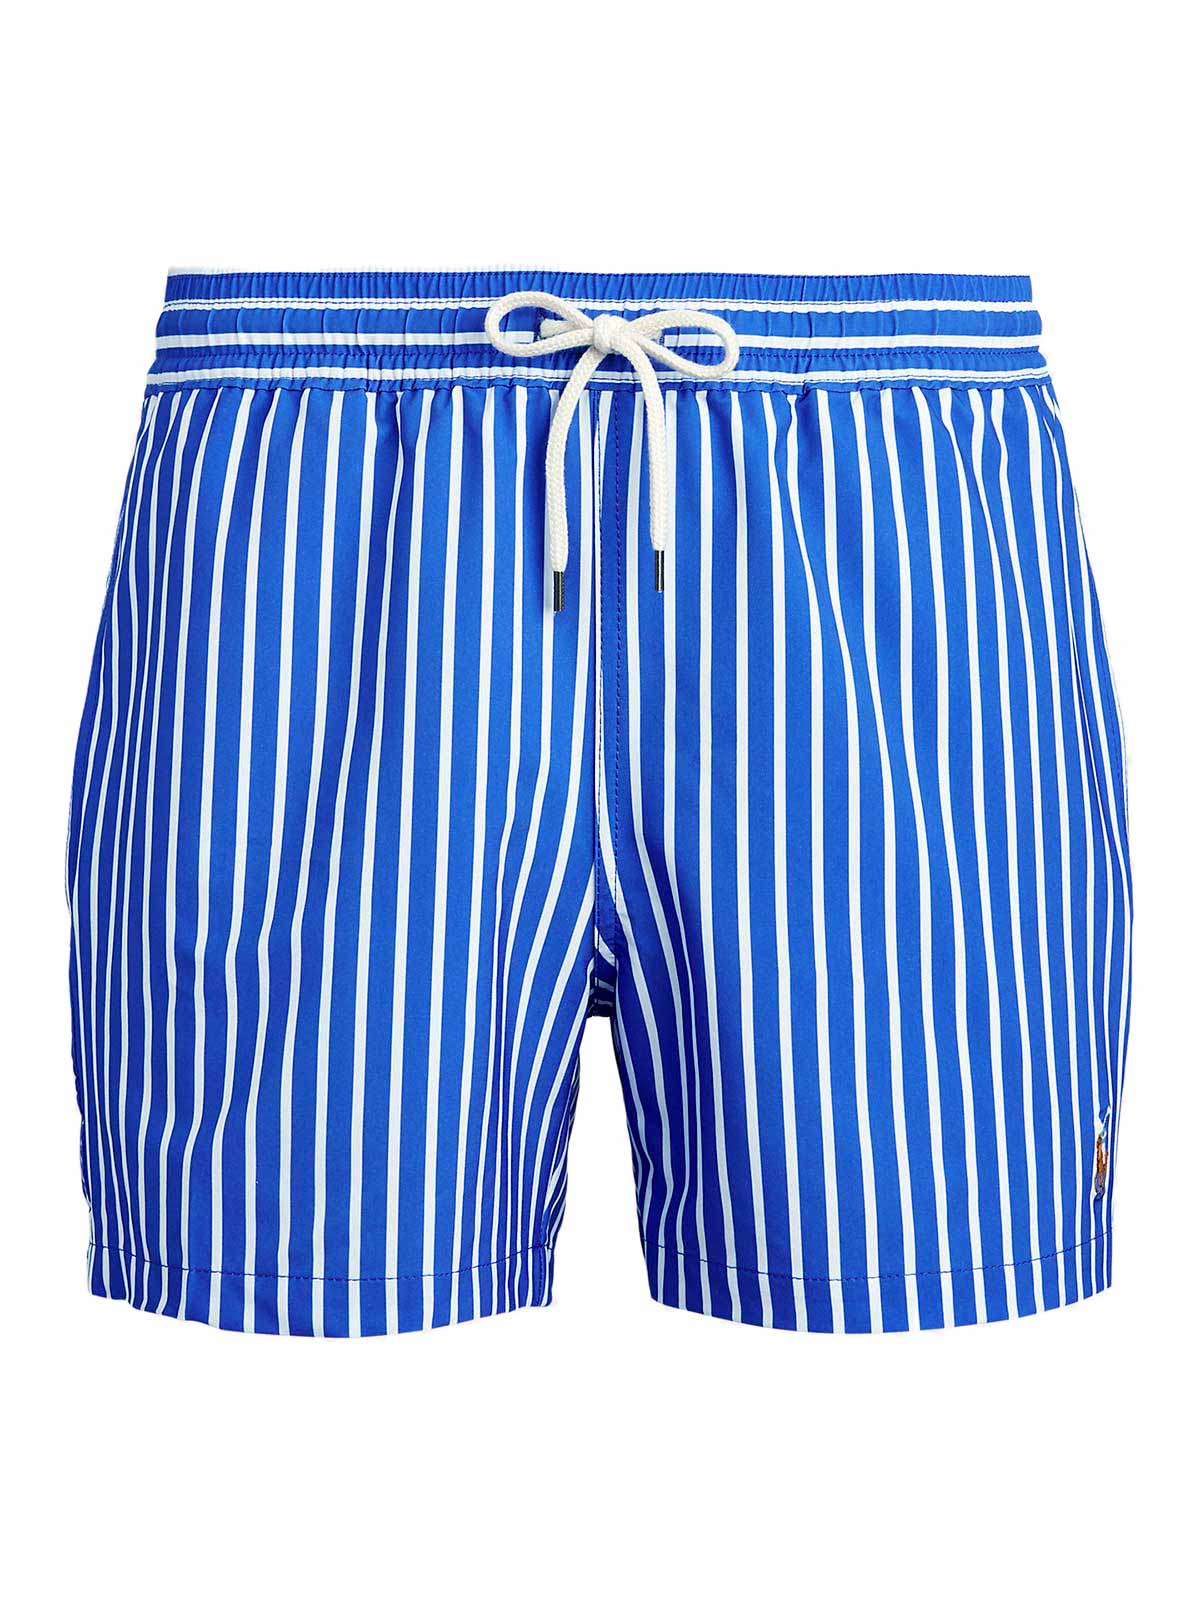 blue polo swim trunks